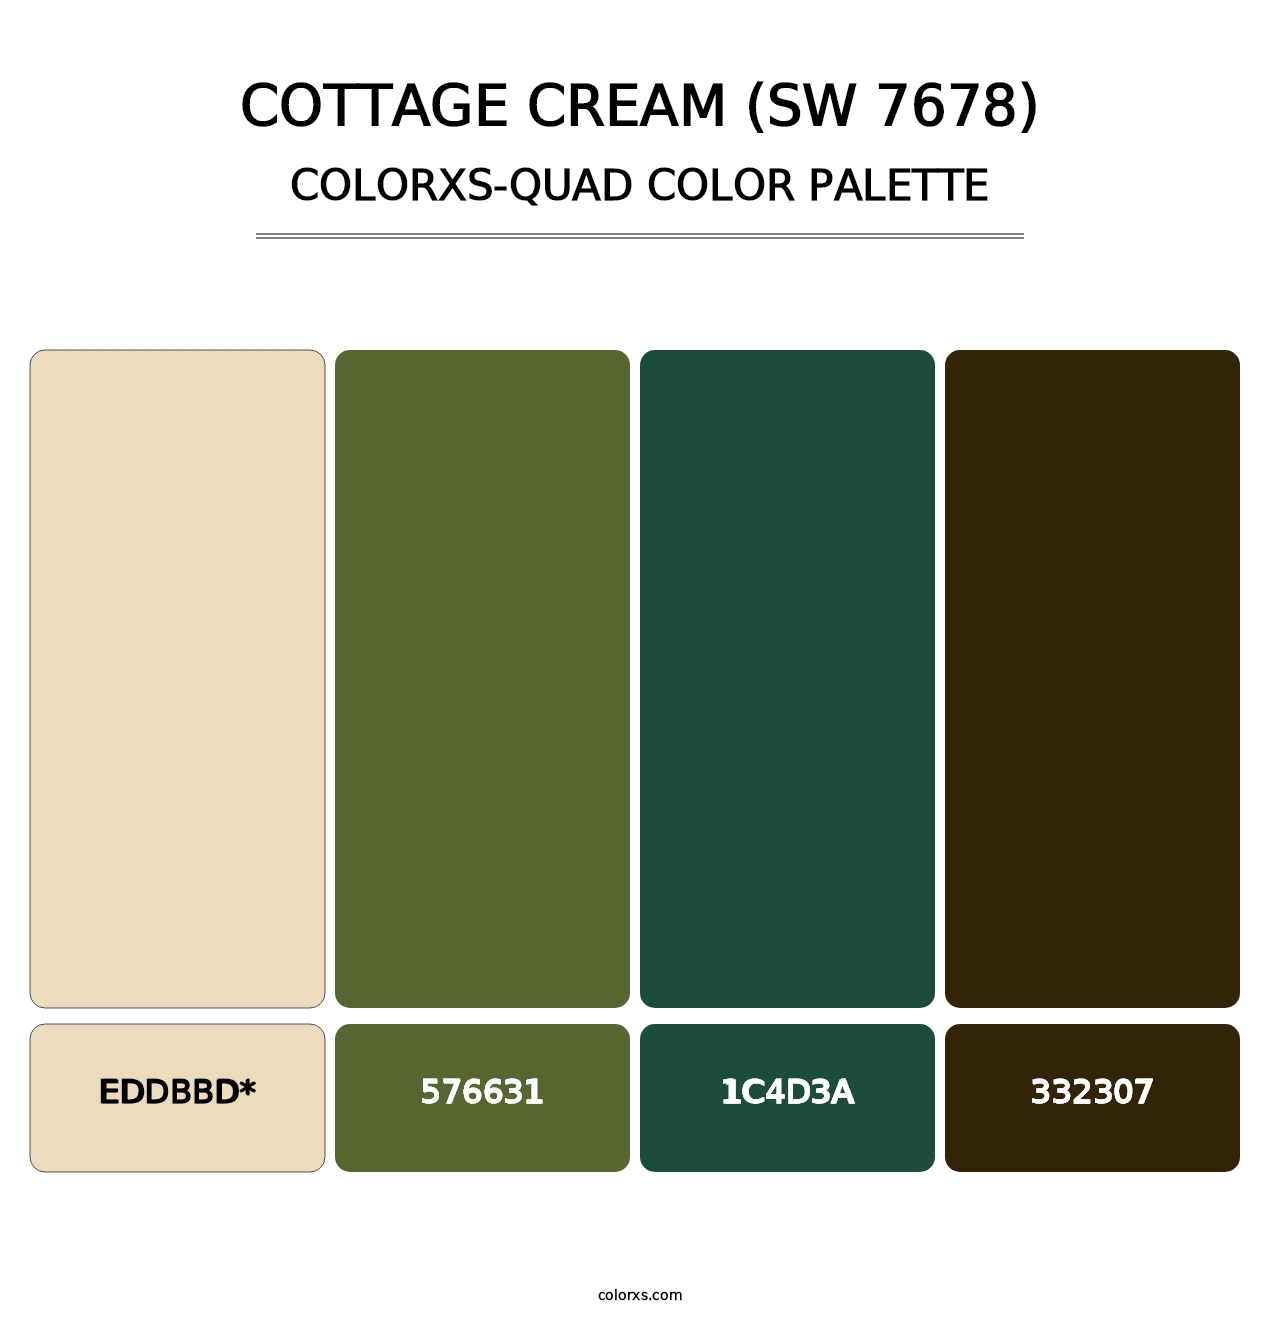 Cottage Cream (SW 7678) - Colorxs Quad Palette